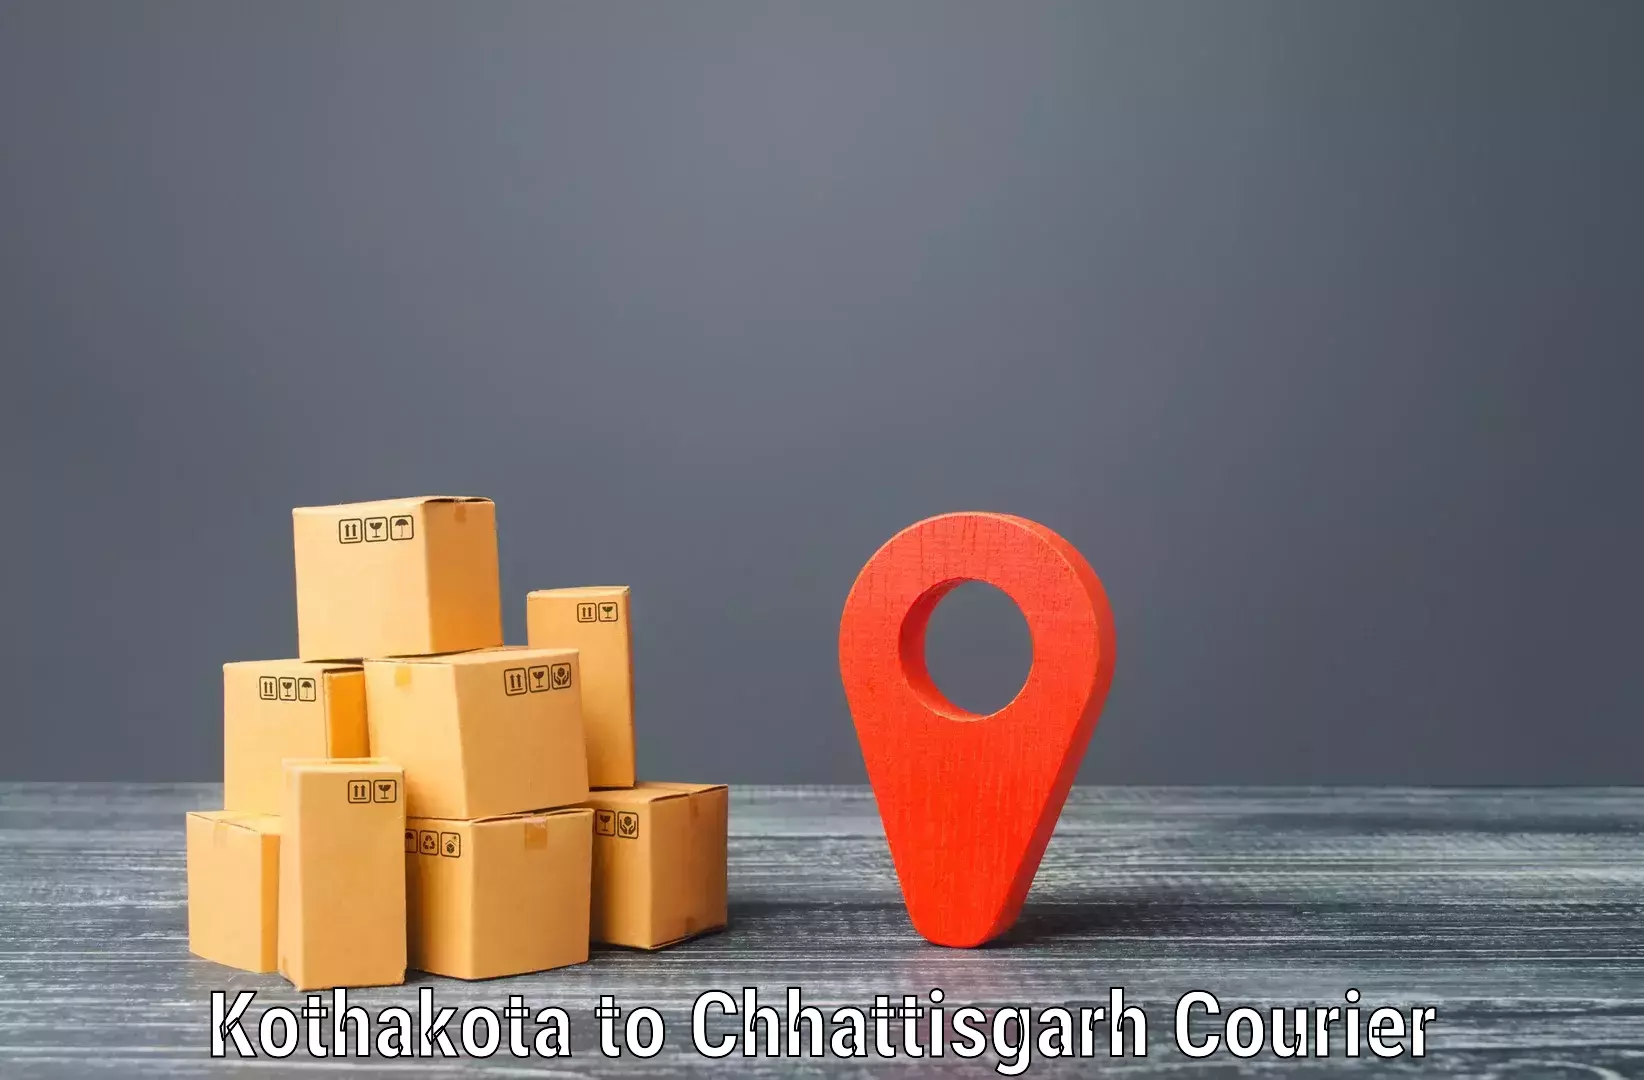 Efficient freight service Kothakota to Pandariya